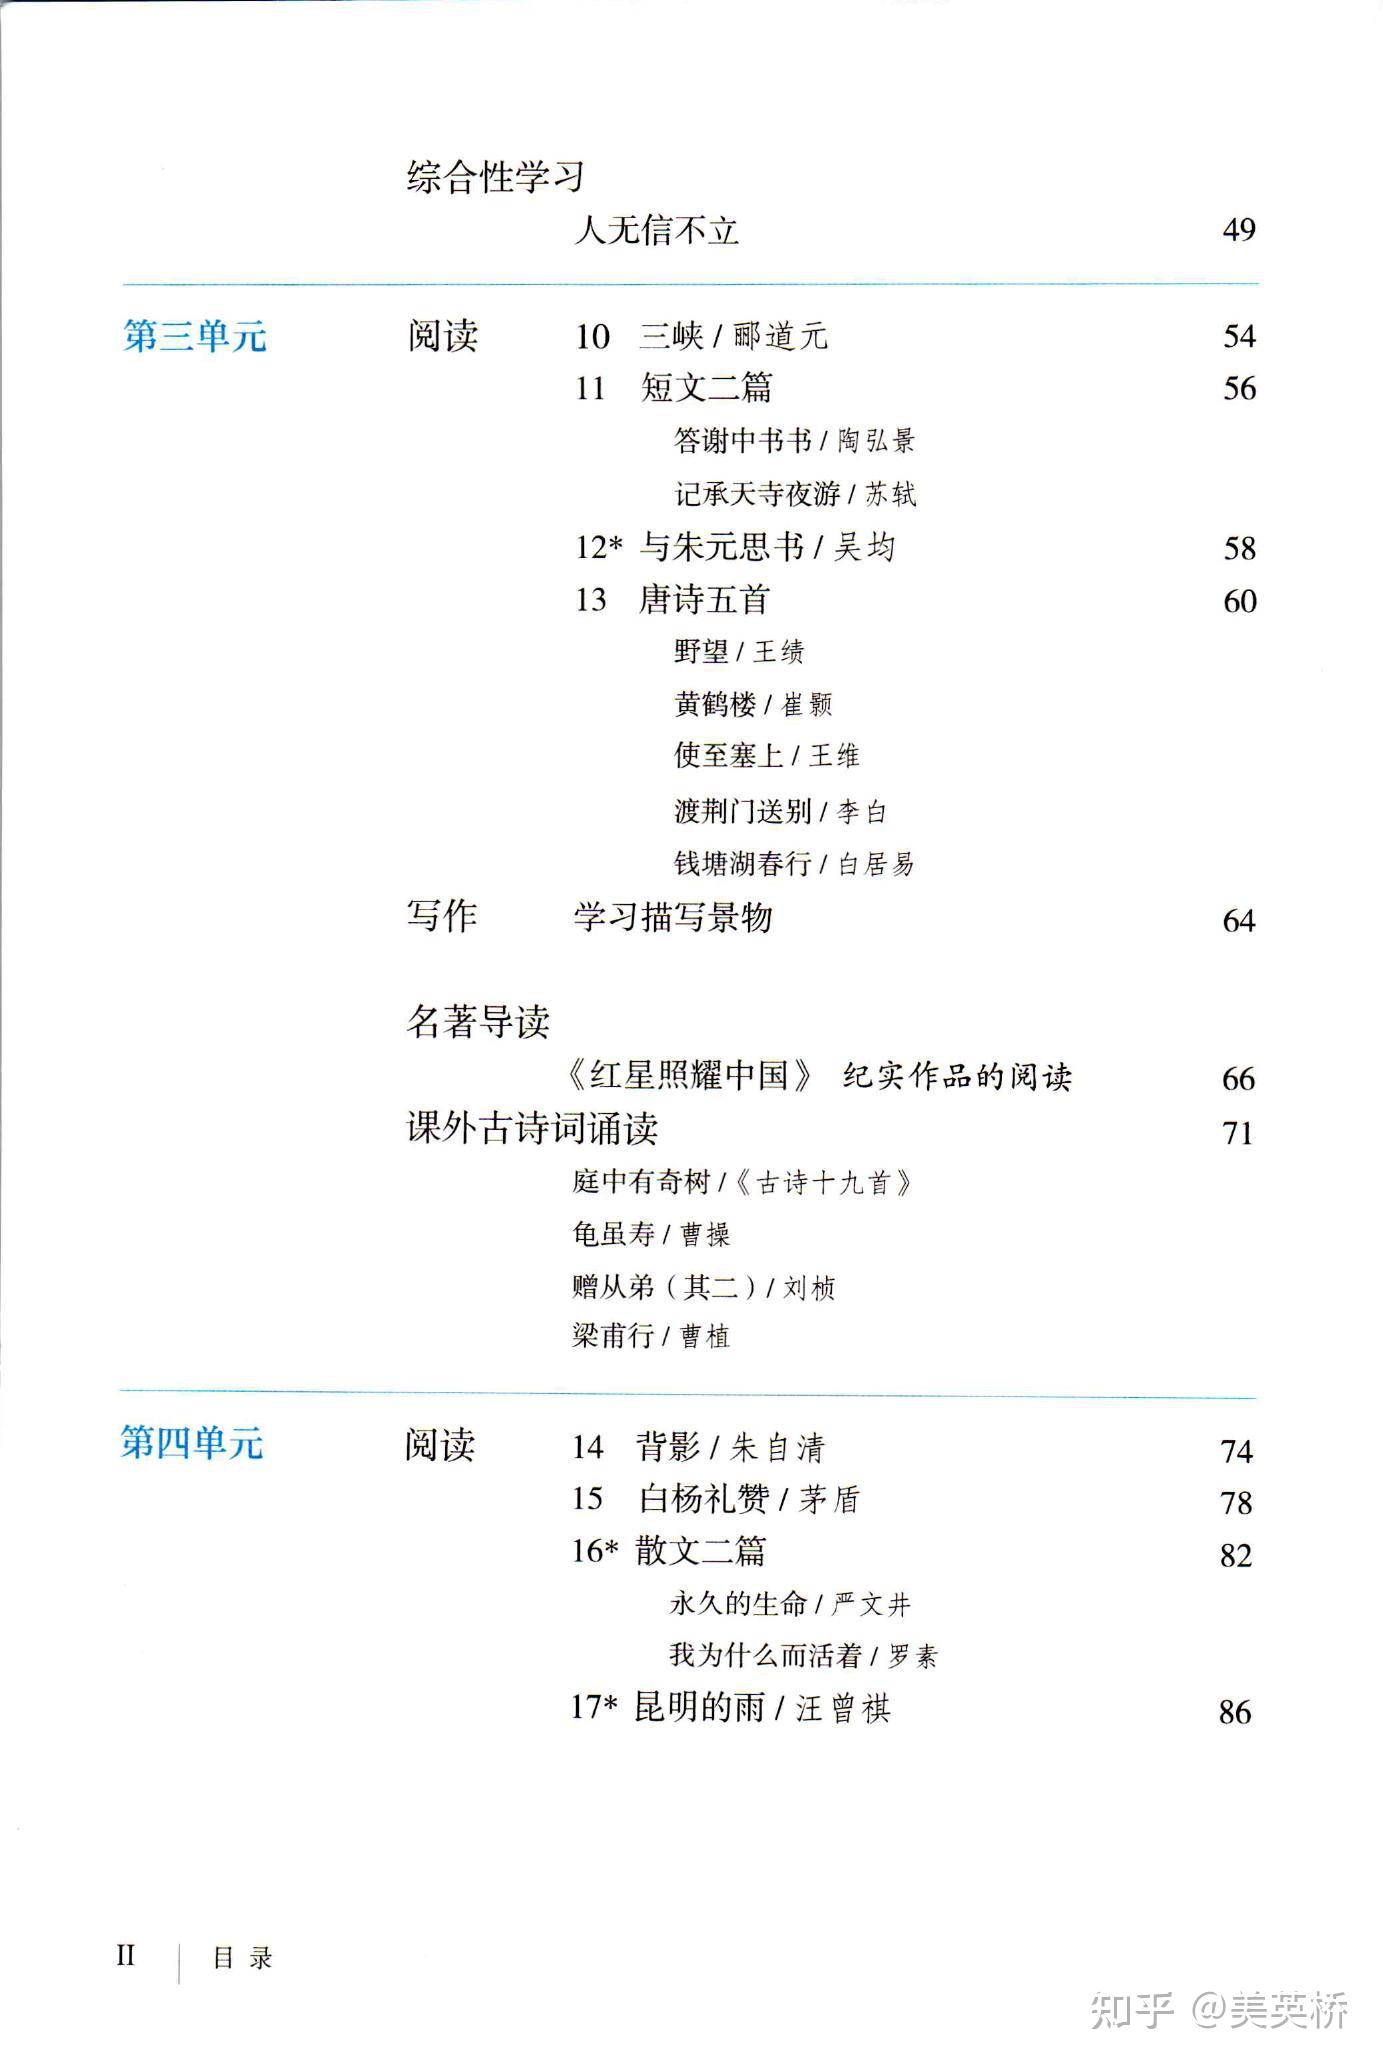 2021年初中语文八年级上册(五四学制)课本教材及相关资源介绍